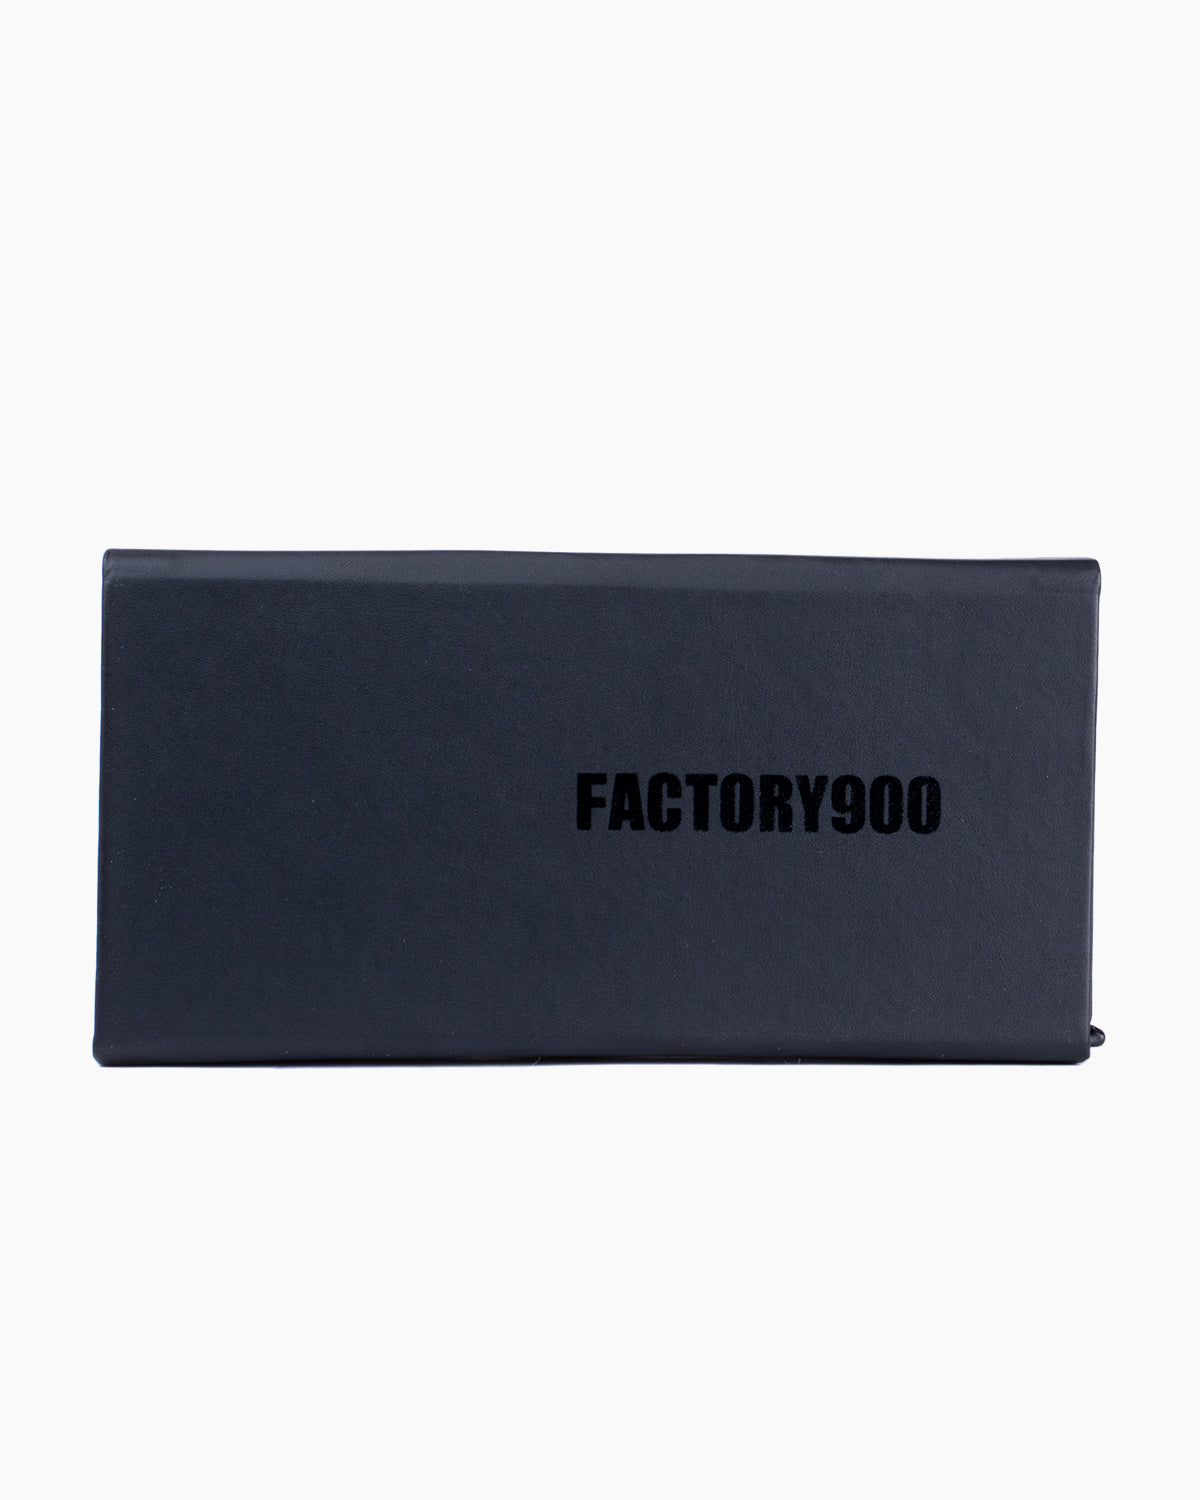 Factory 900-RF140-001 | glasses bar